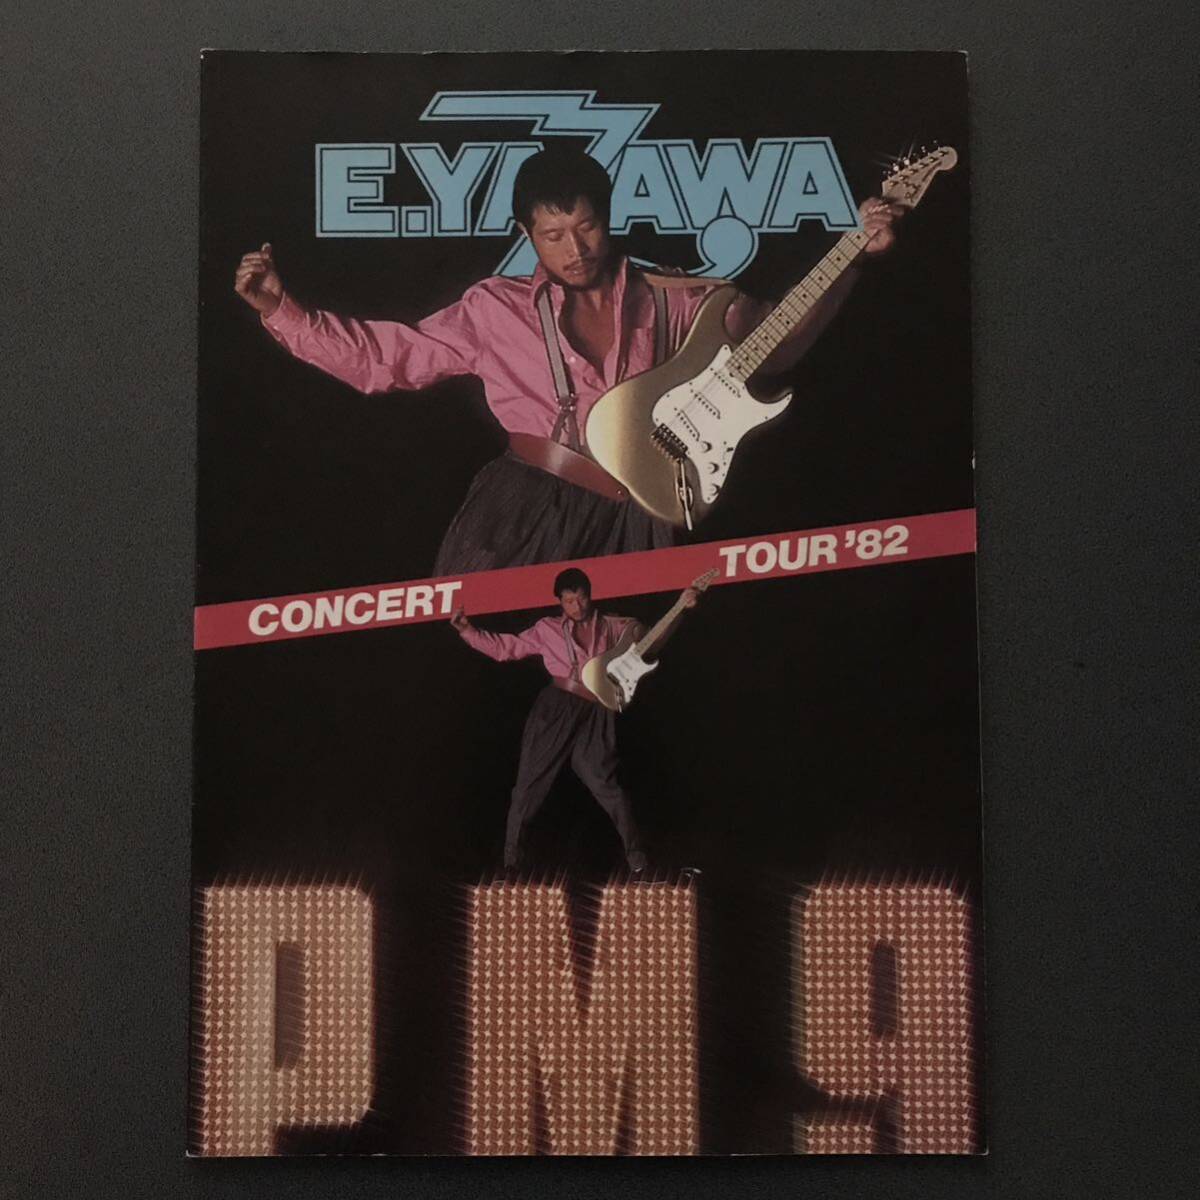 矢沢永吉 E.YAZAWA 【CONCERT TOUR ‘82 P.M.9】 コンサート パンフレットの画像1